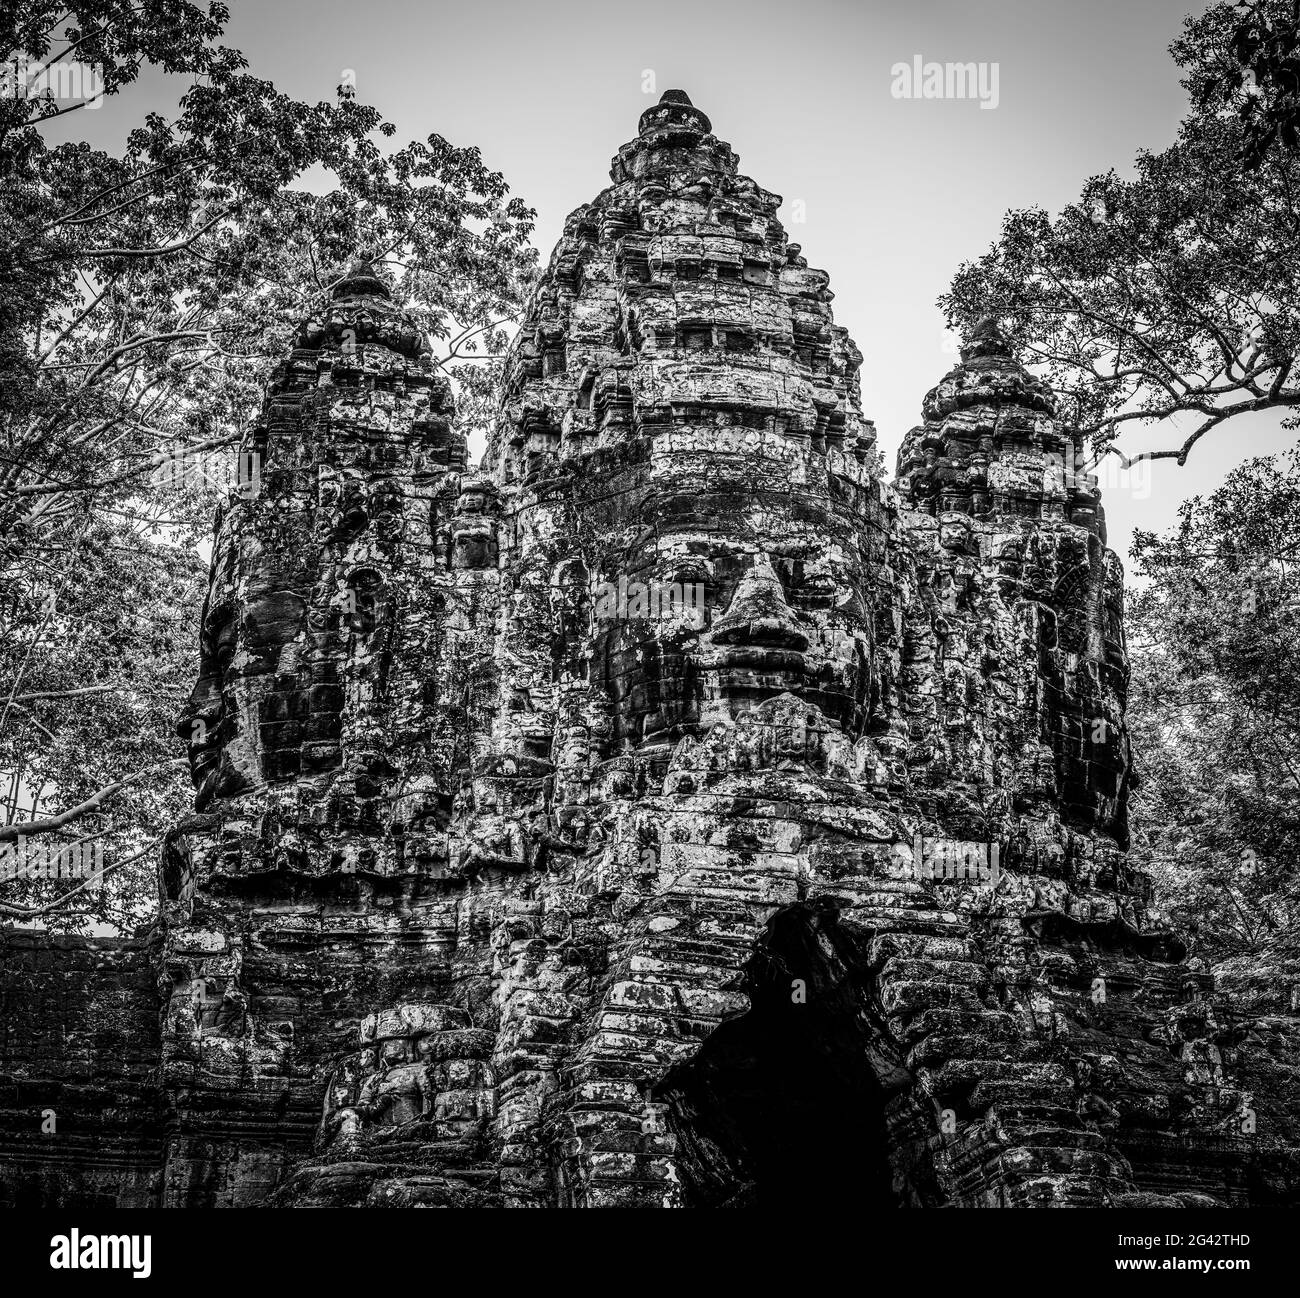 Porte nord du temple de Thom d'Angkor ruine en noir et blanc, Parc archéologique d'Angkor Wat, Siem Reap, Cambodge Banque D'Images